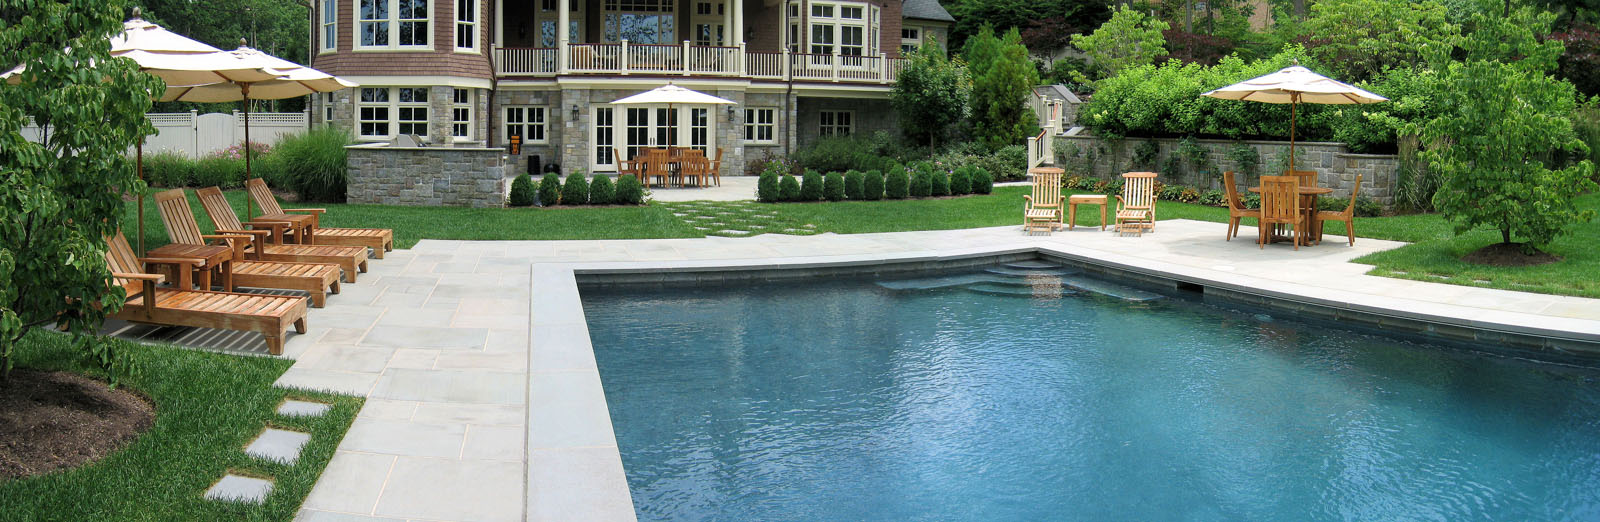 rectangular swimming pool, facing house